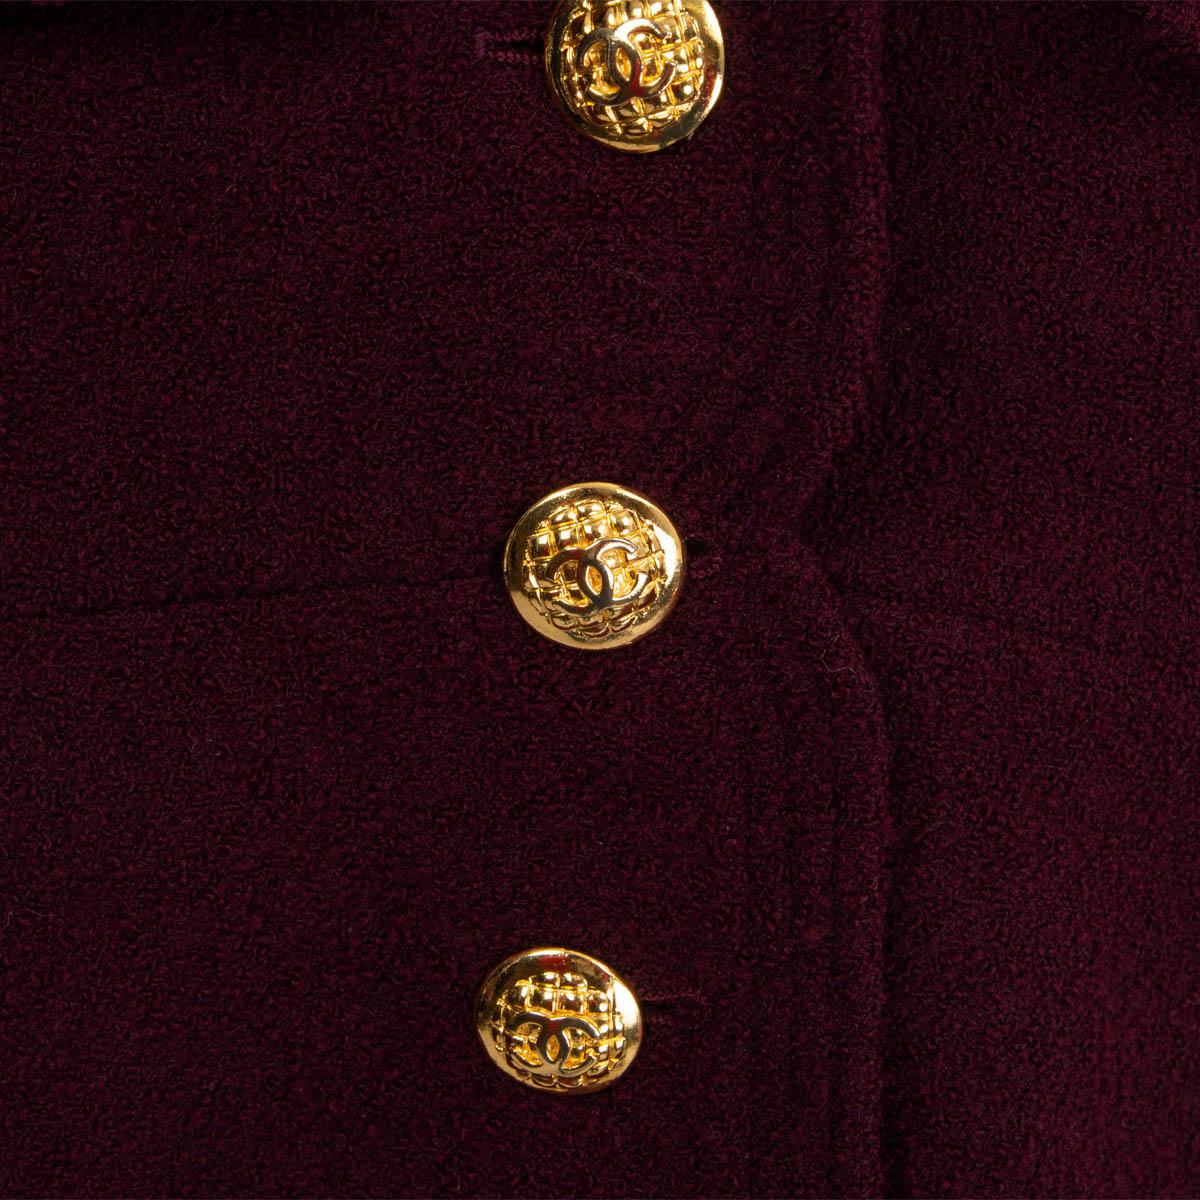 CHANEL burgundy wool blend VINTAGE TWEED Blazer Jacket M 1